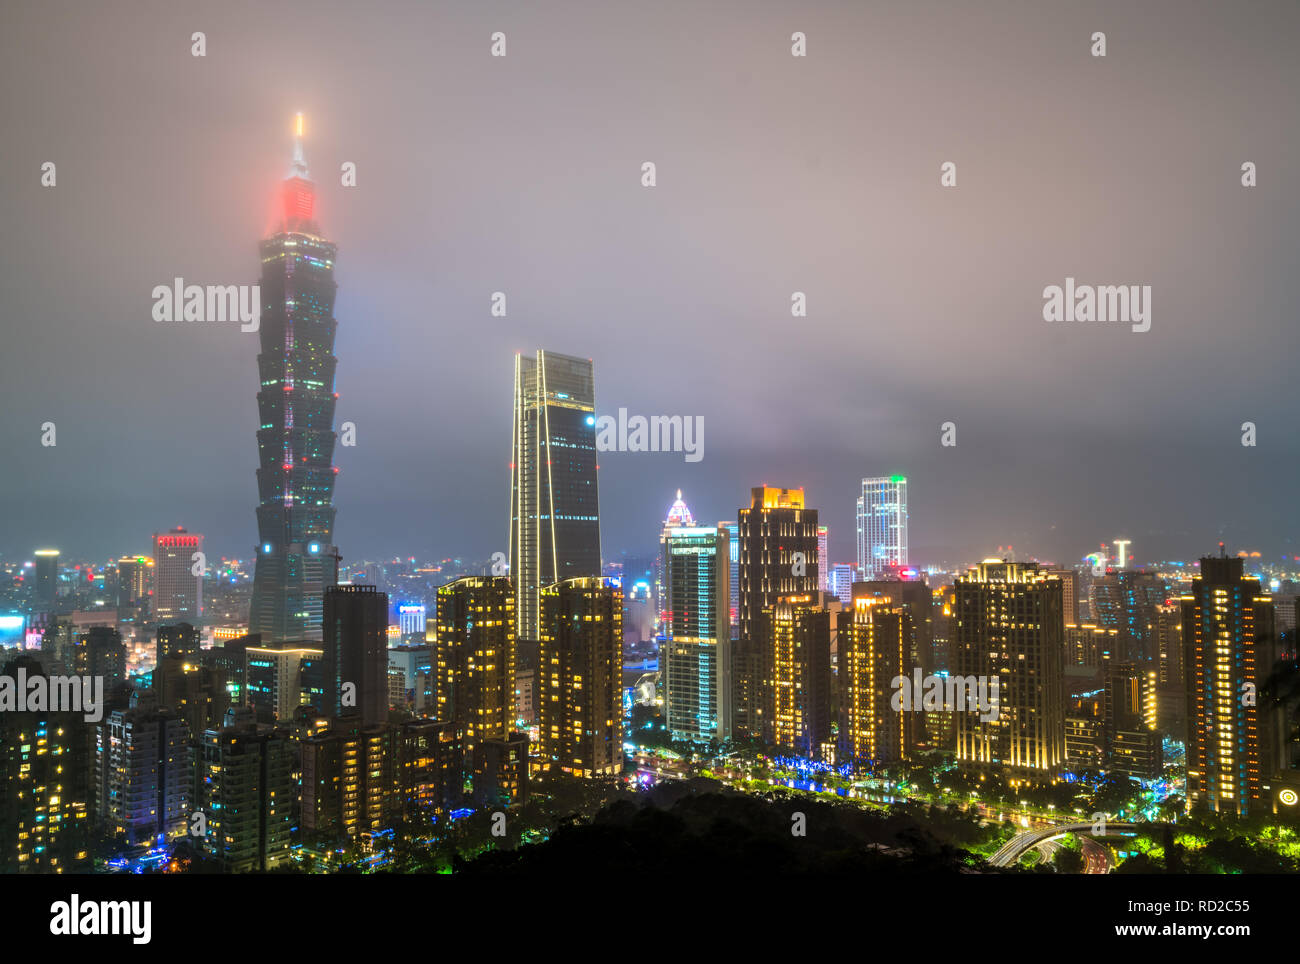 Taipei skyline at night. Taiwan, the Republic of China Stock Photo